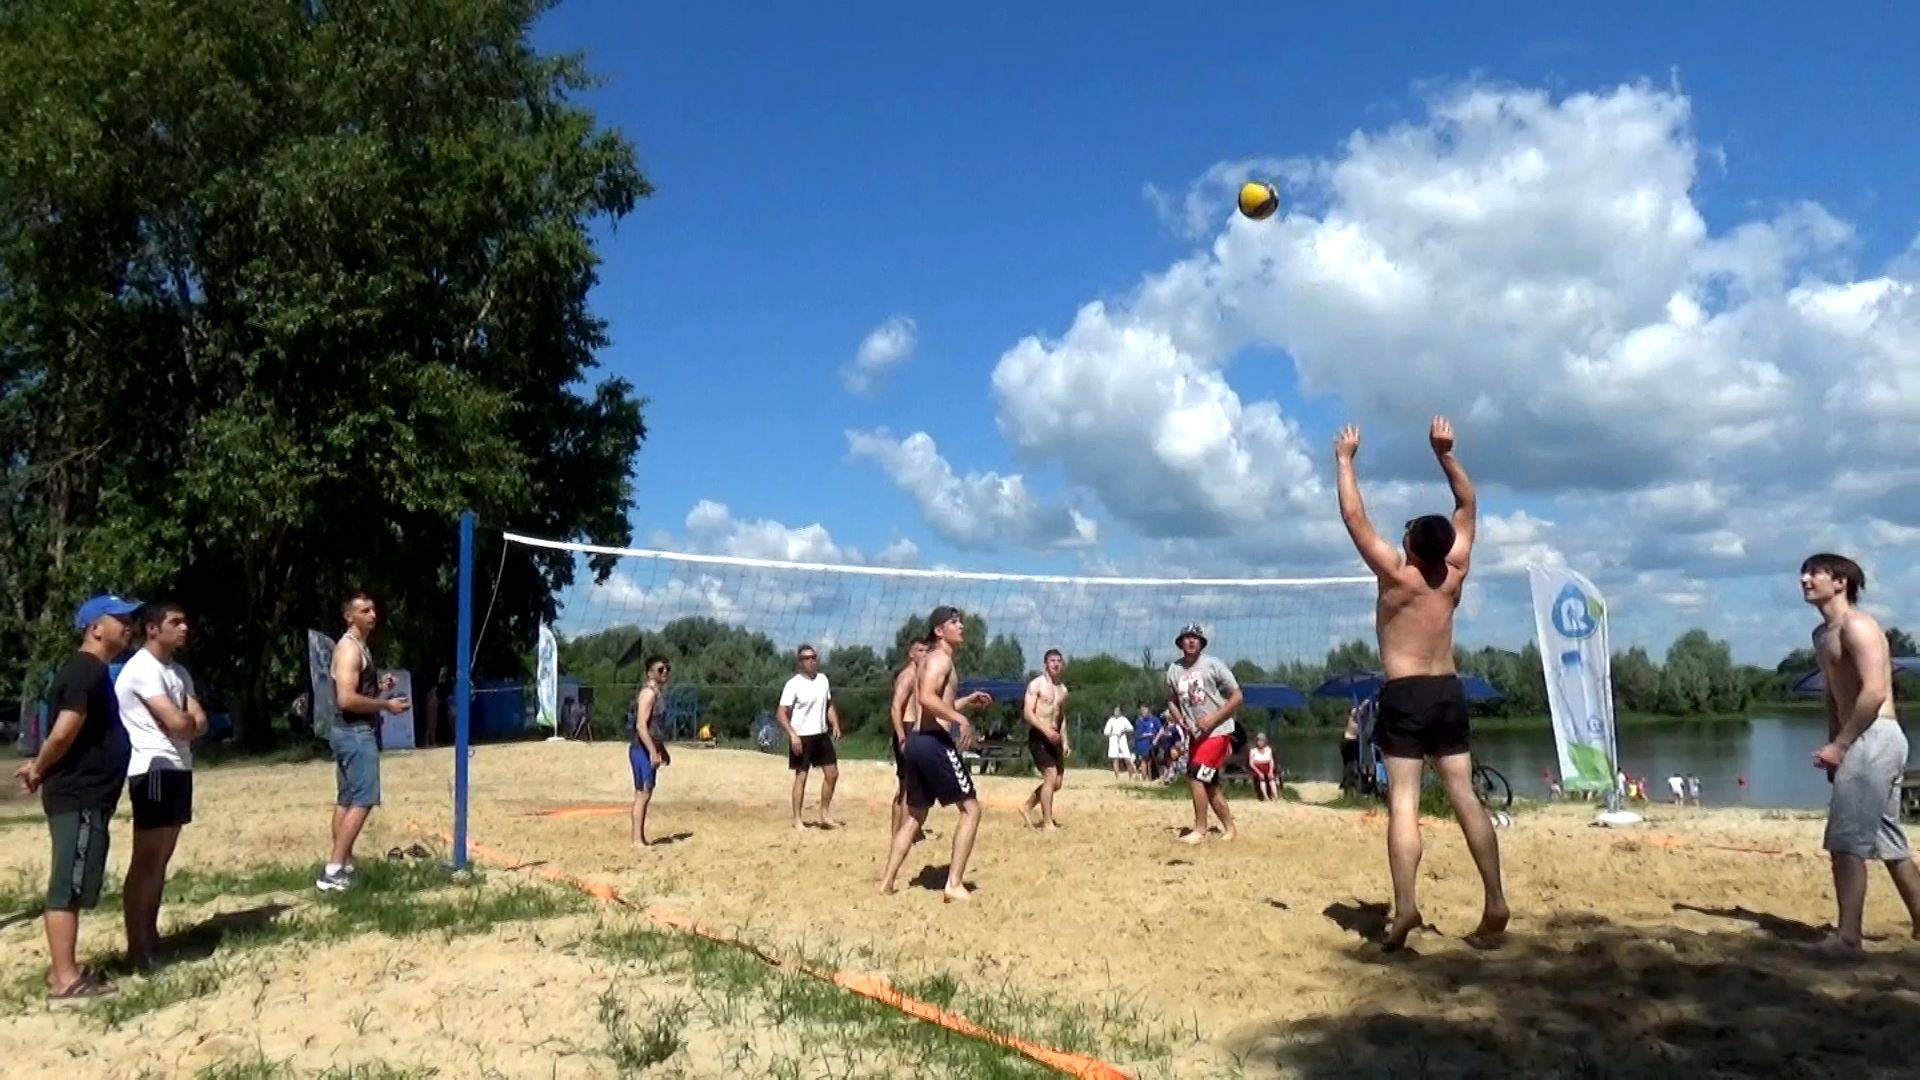 Пляжный фестиваль «Летнее притяжение» в городе Вязники - игра в пляжный волейбол